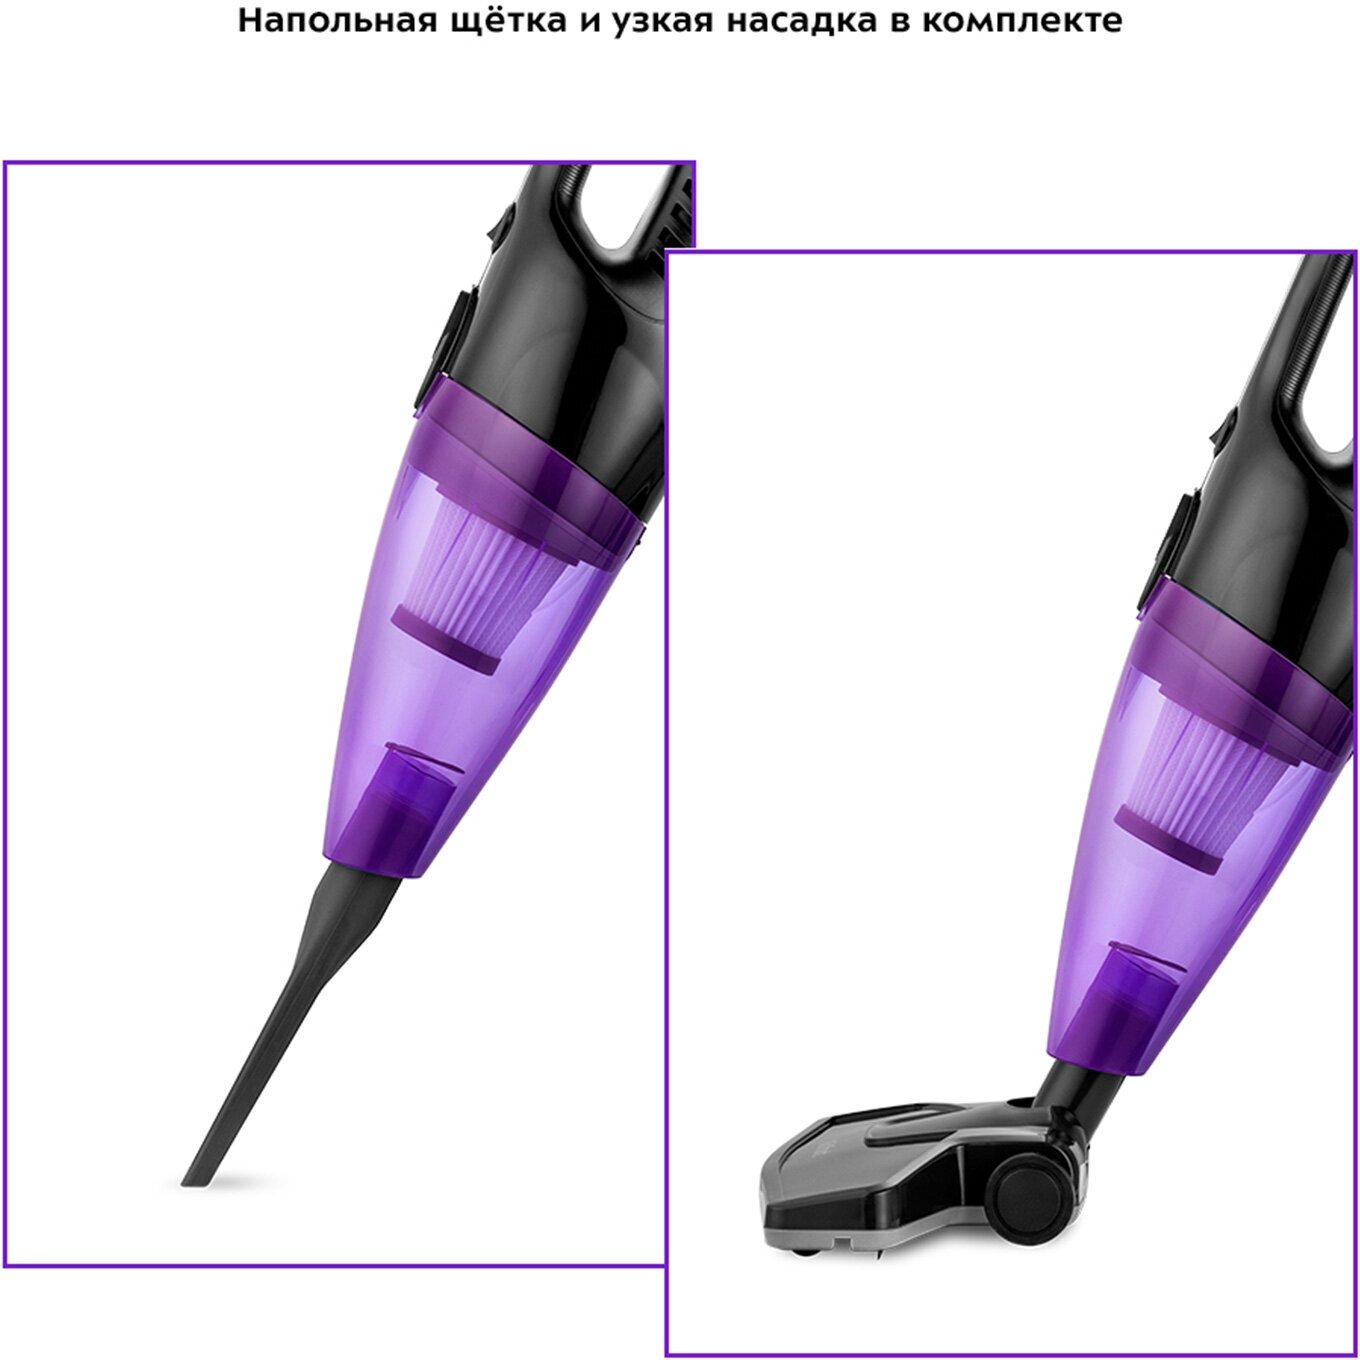 Вертикальный пылесос Kitfort КТ-5137-1 черно-фиолетовый